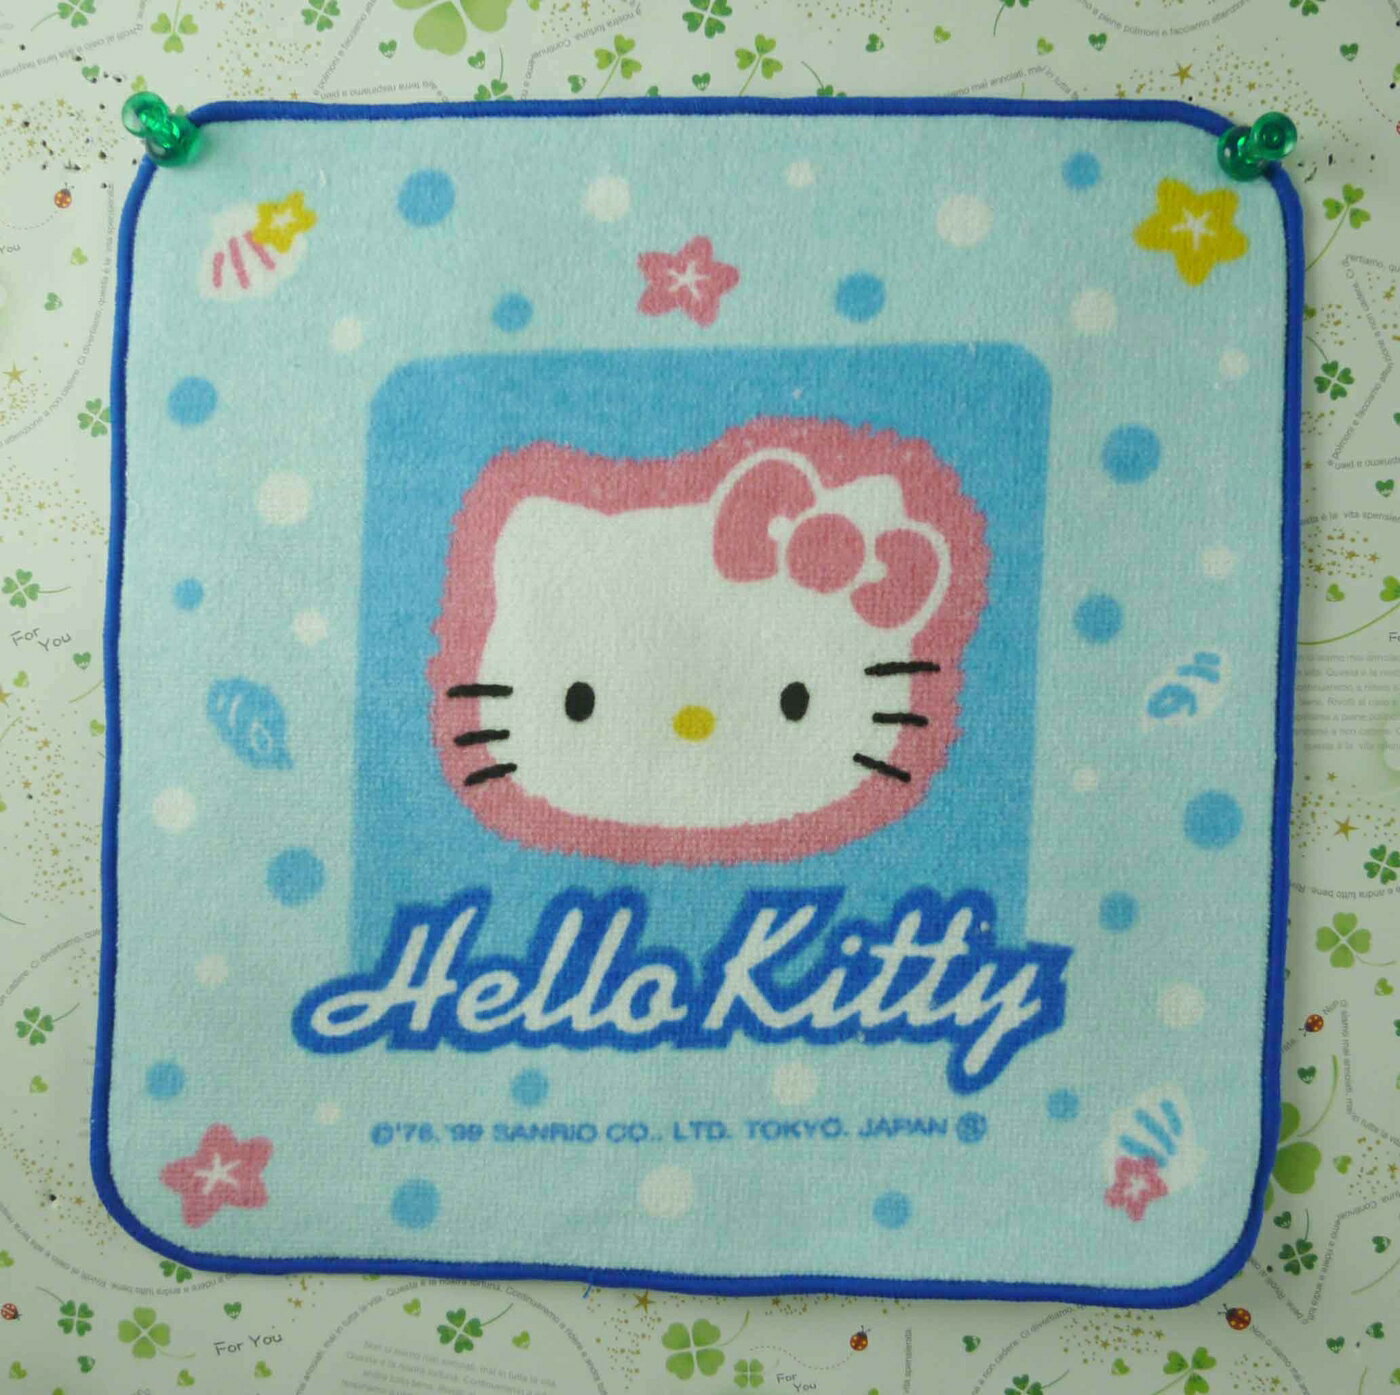 【震撼精品百貨】Hello Kitty 凱蒂貓 方巾/毛巾-海洋風 震撼日式精品百貨